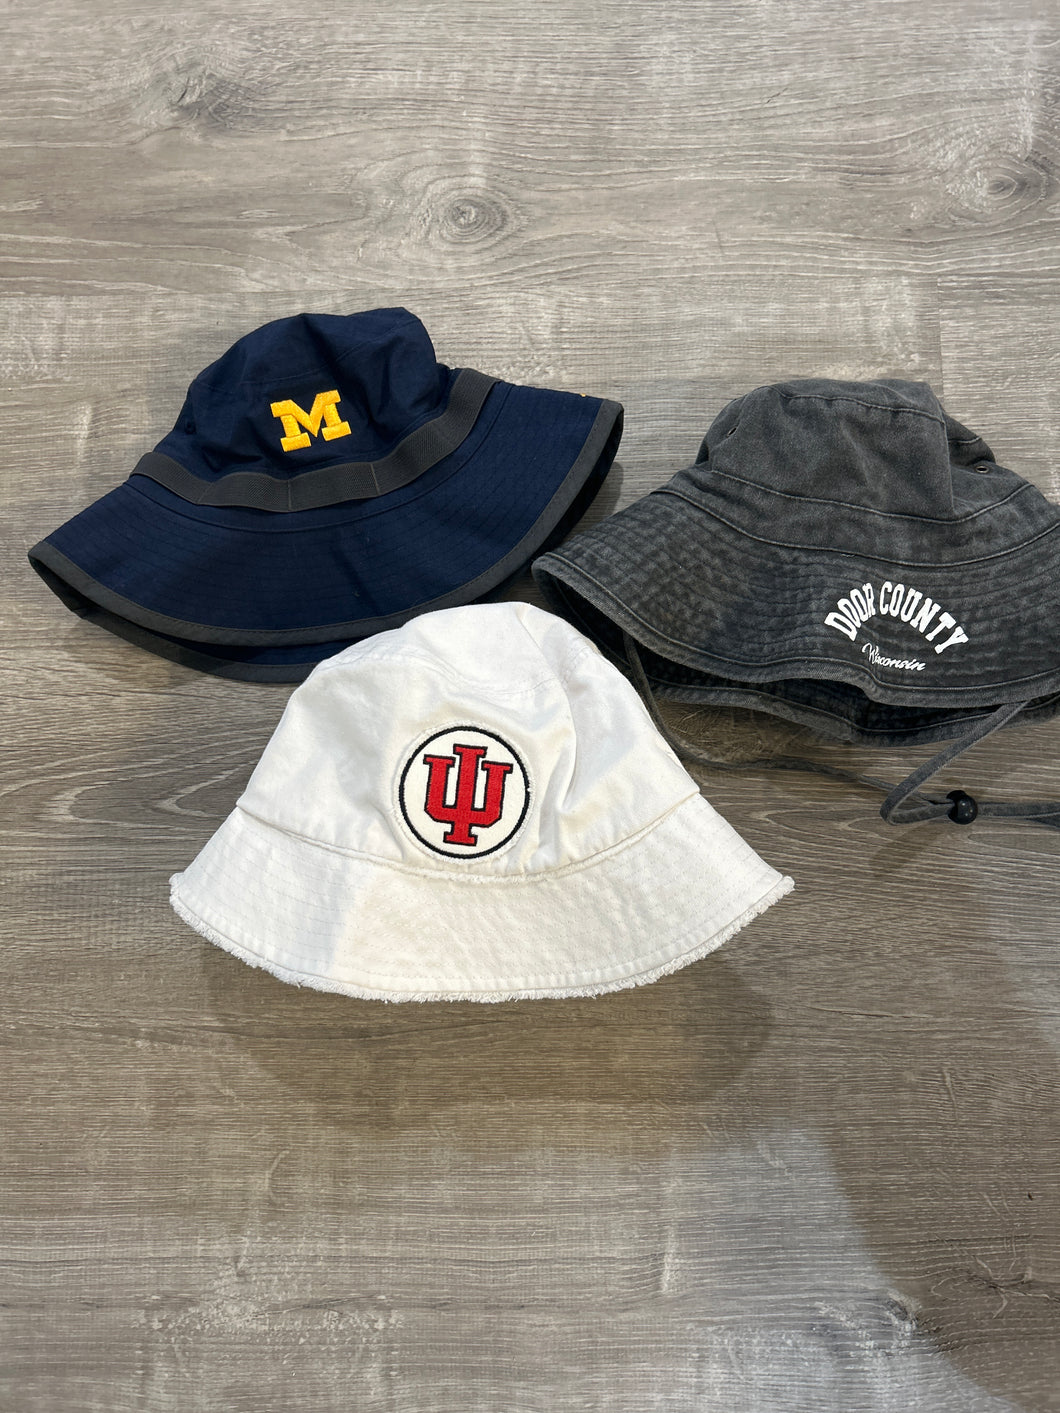 Bundle of Bucket Hats - Michigan/Indiana/Door county